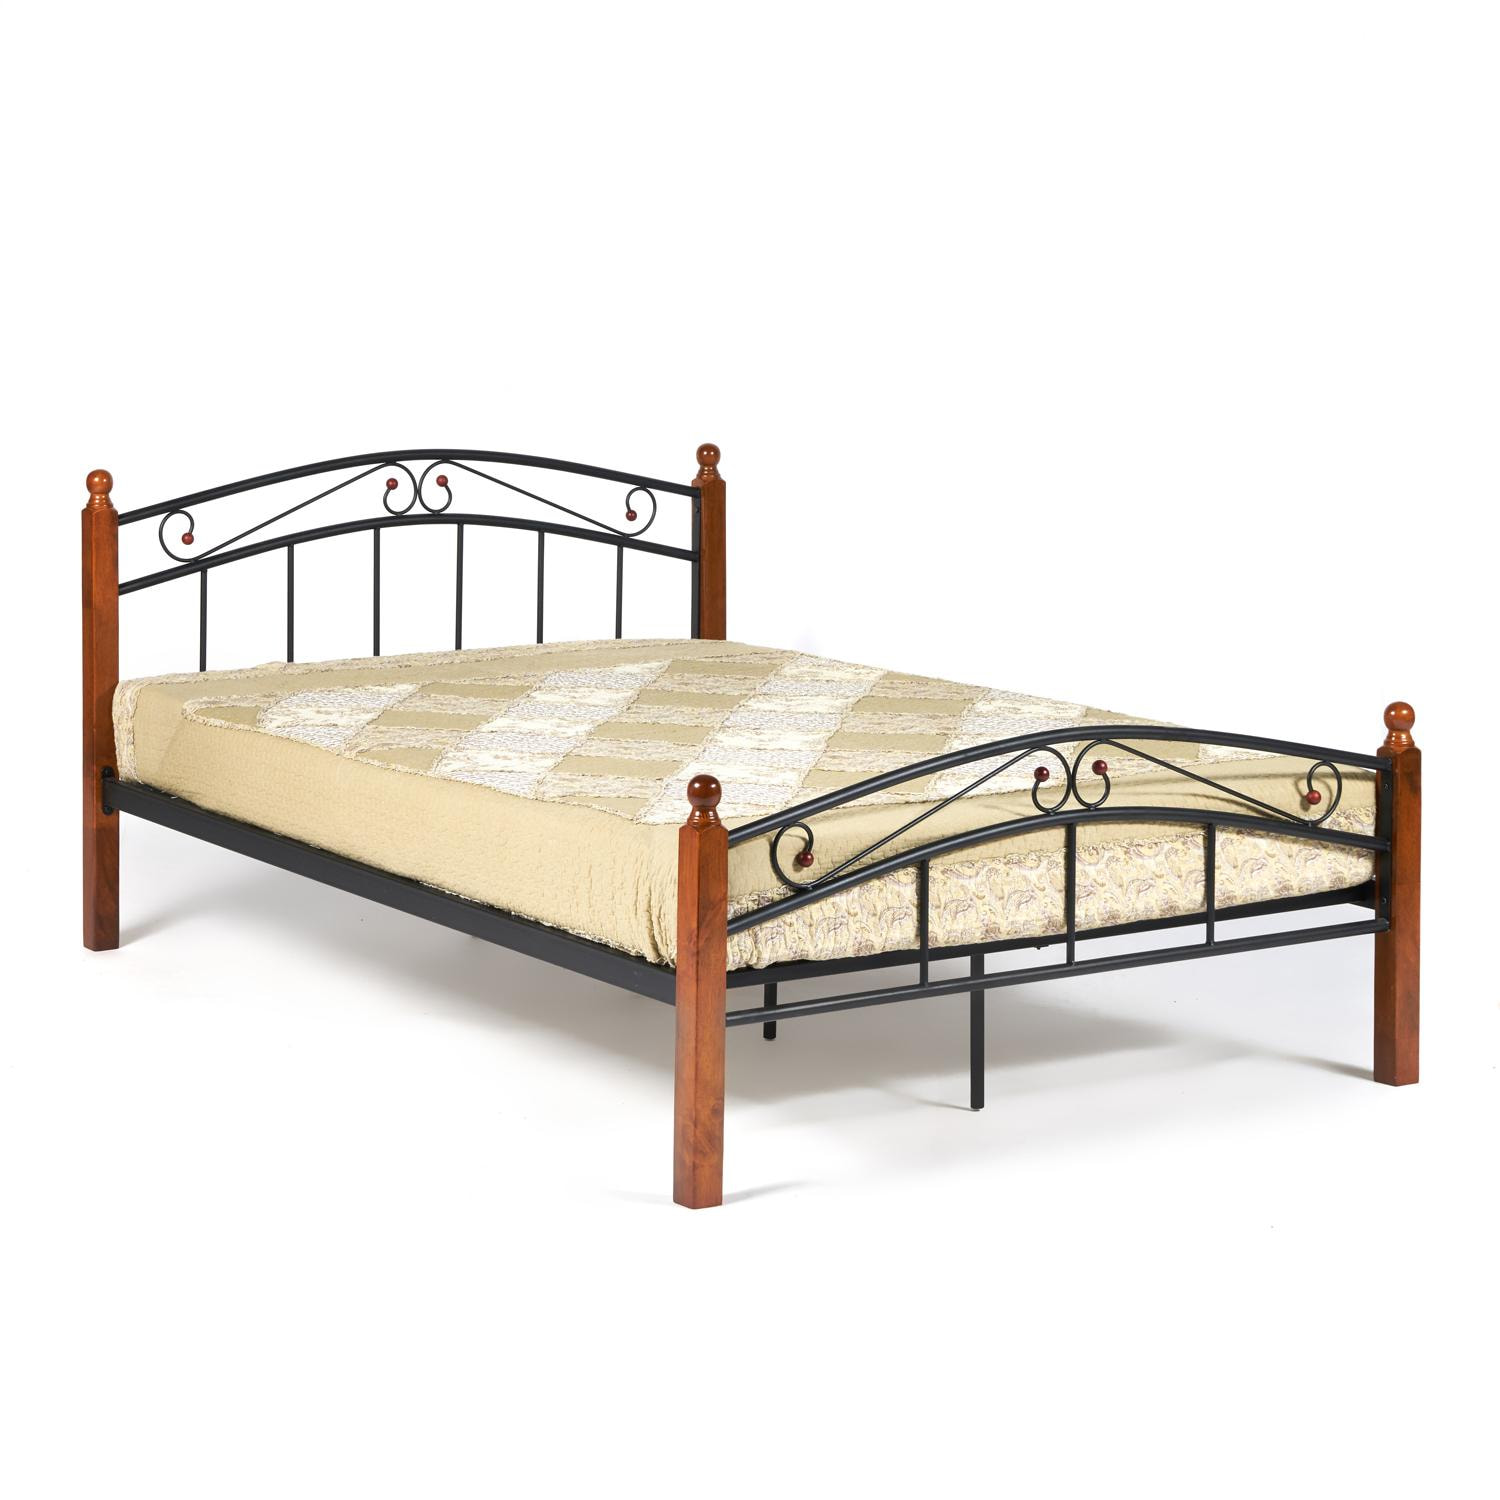 Кровать AT-8077 Wood slat base дерево гевея/металл, 140*200 см (Double bed), красный дуб/черный